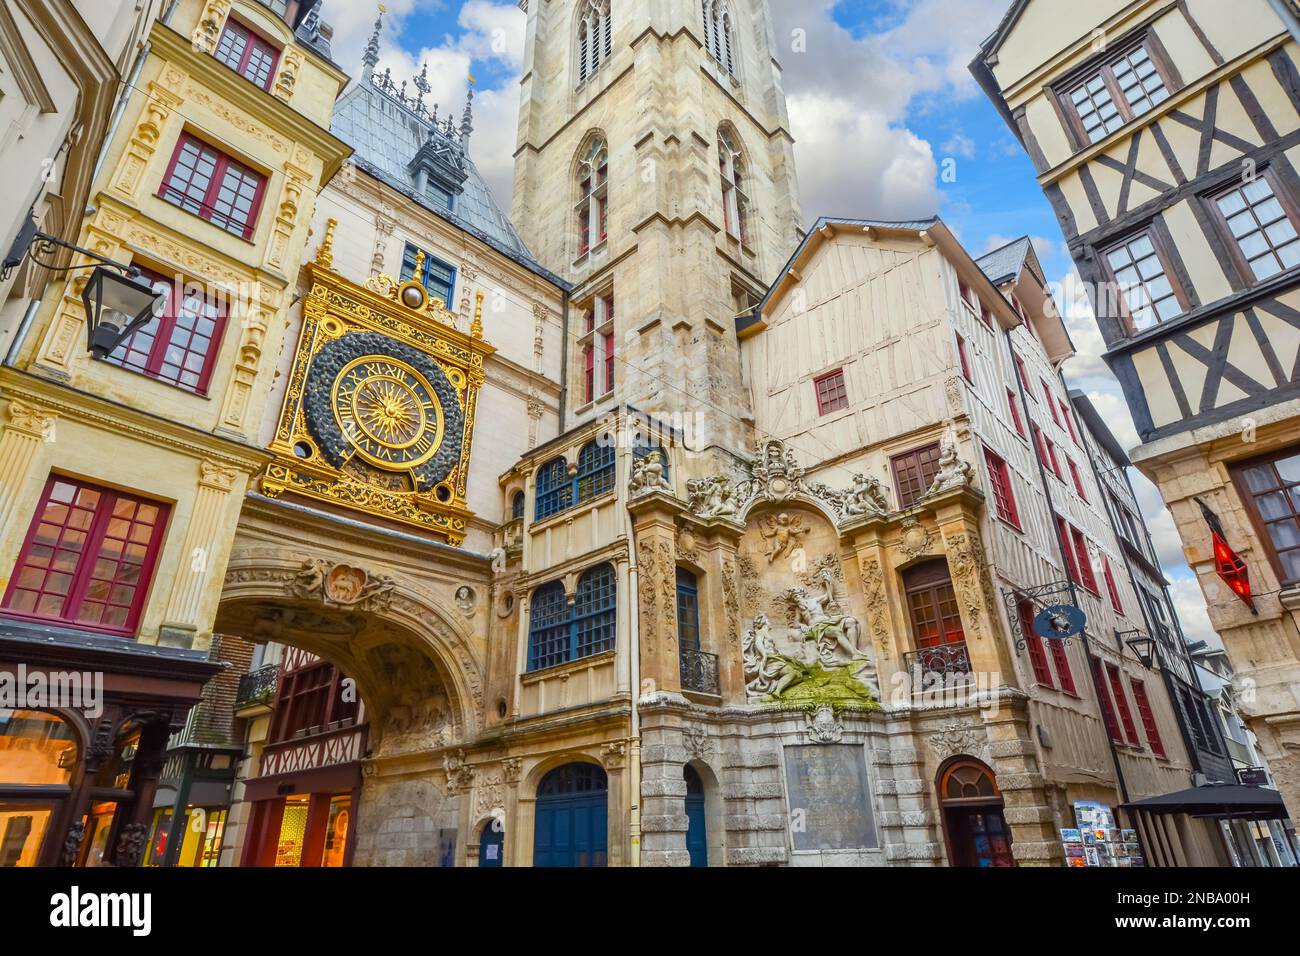 Die Gros Horloge, die mittelalterliche astronomische Uhr an der Hauptstraße von Rouen Frankreich Stockfoto